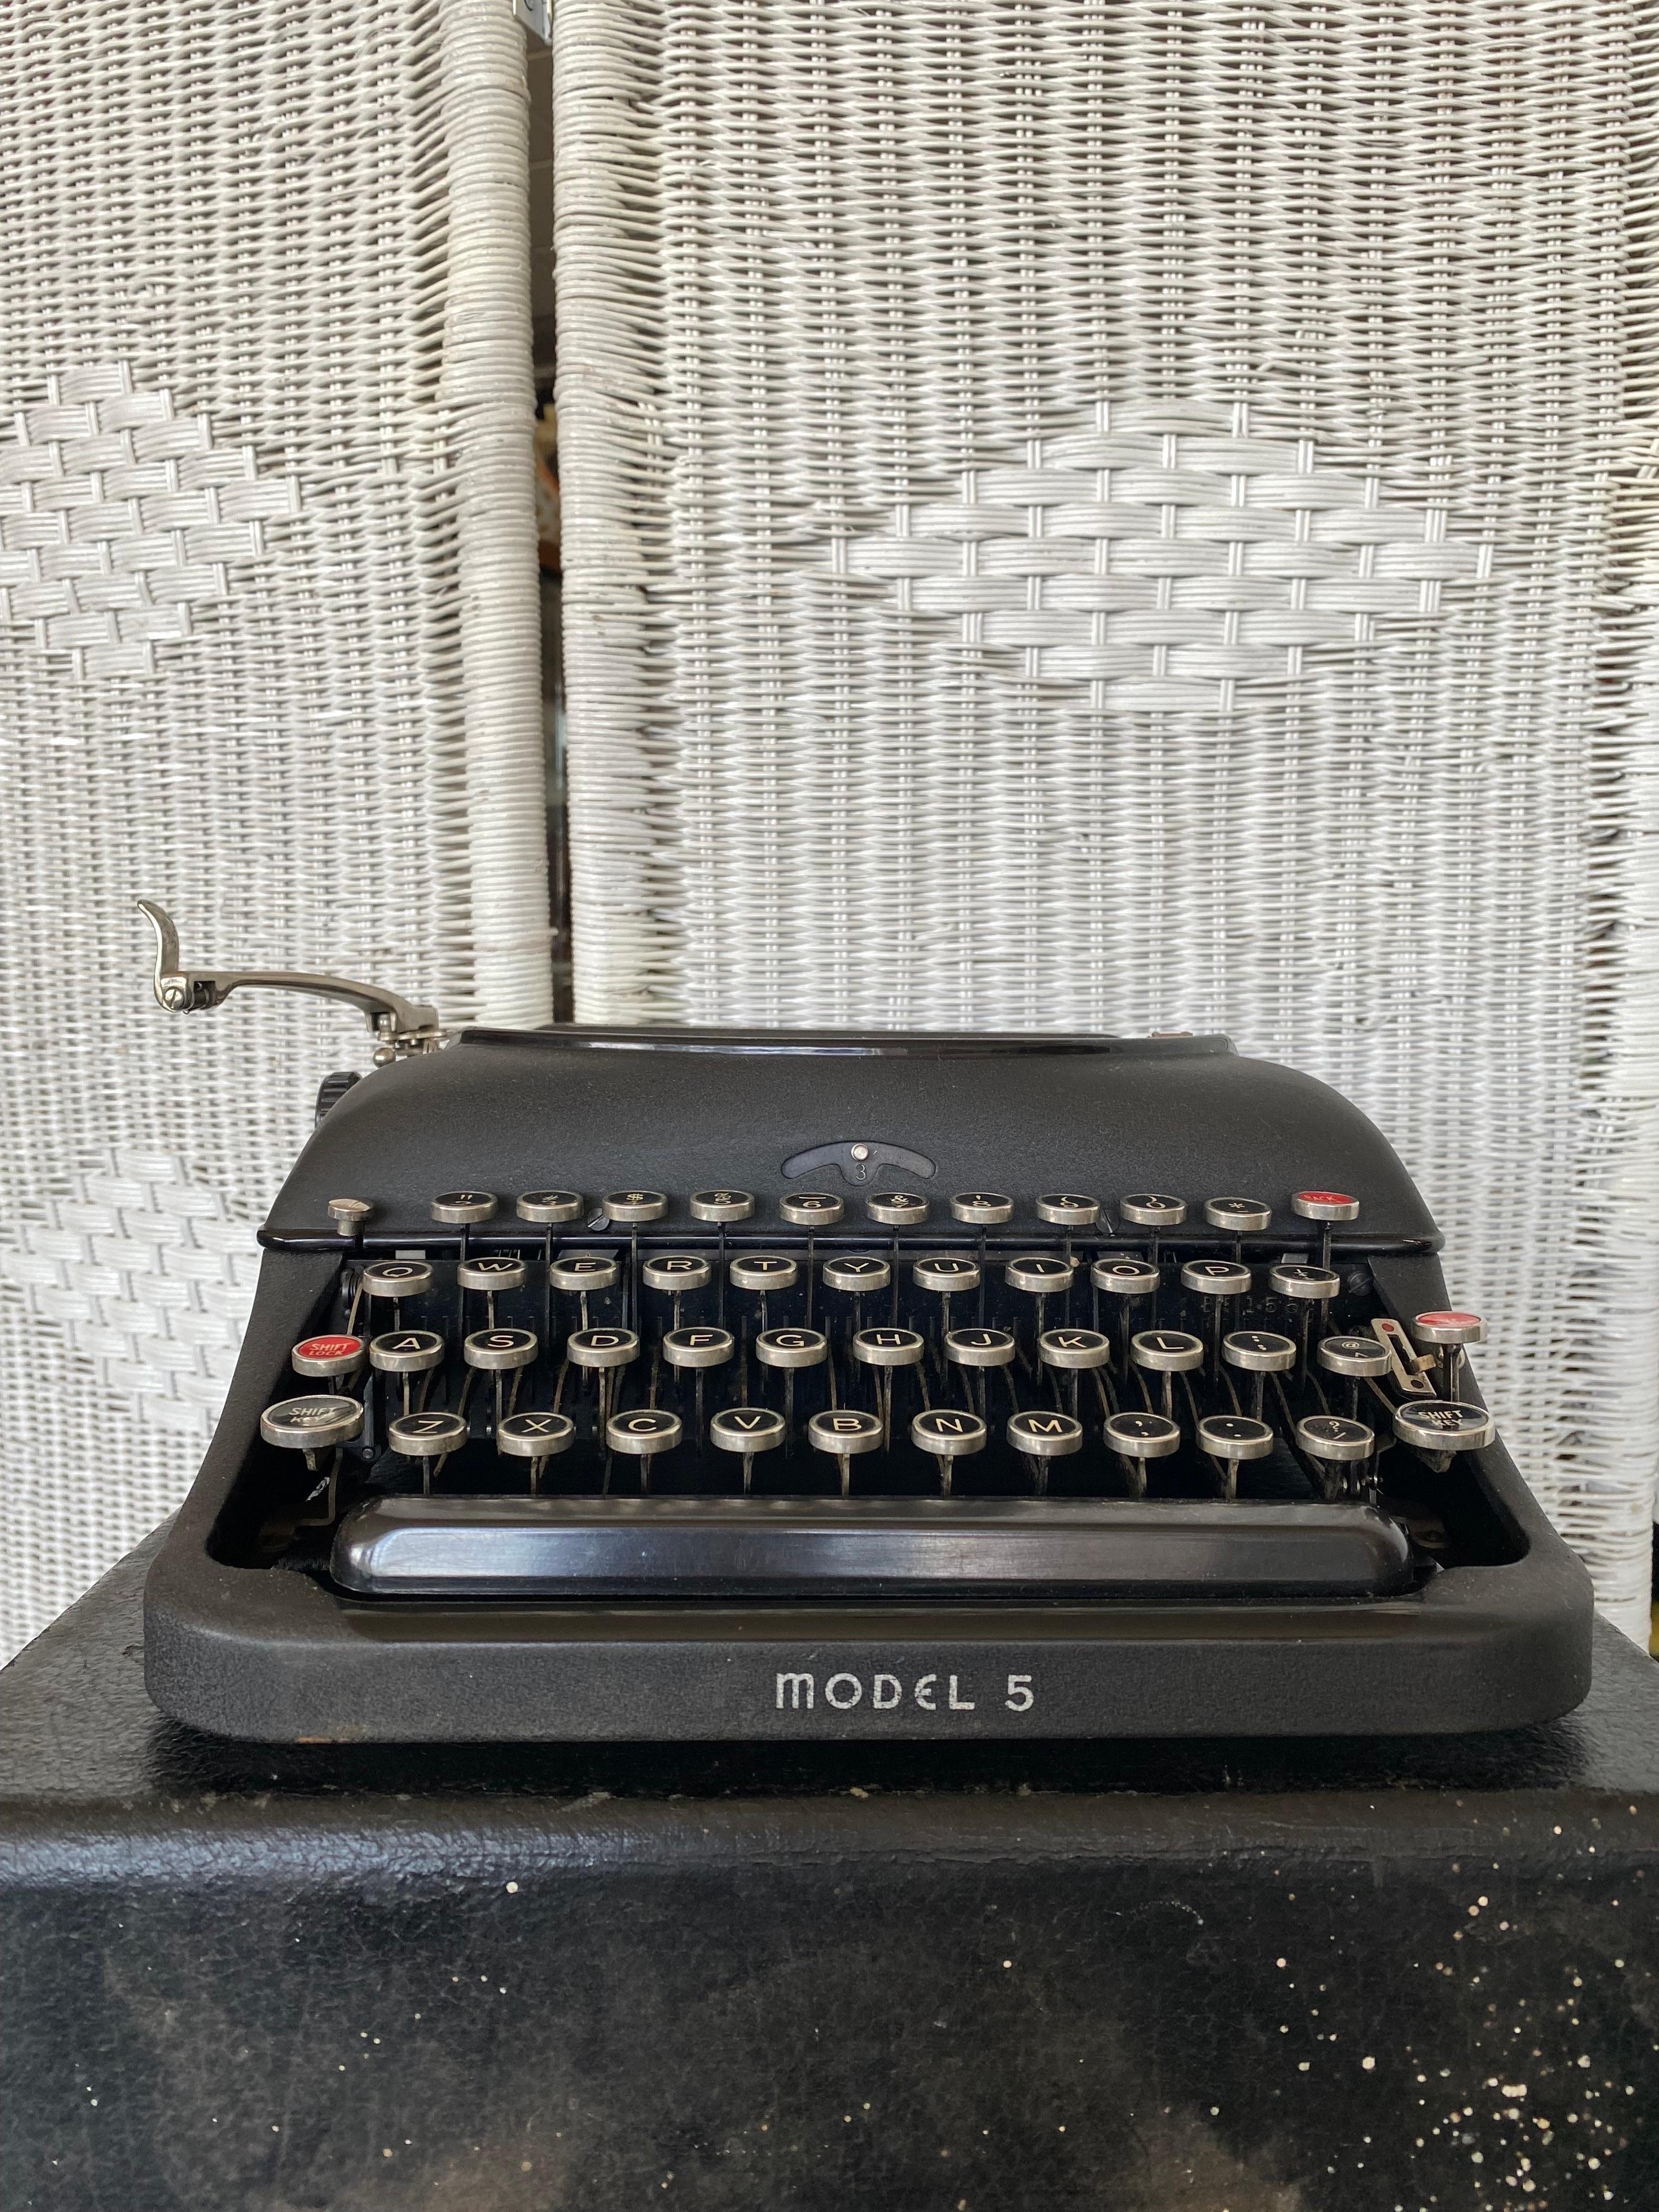 Américain 1940s Remington Model 5 Portable Black Typewriter with Case (Machine à écrire portable noire avec étui) 